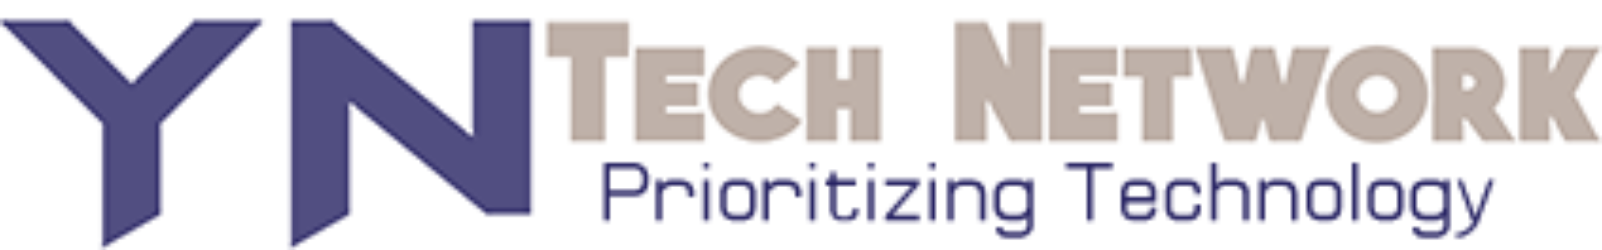 YN-Tech-Network-Logo22